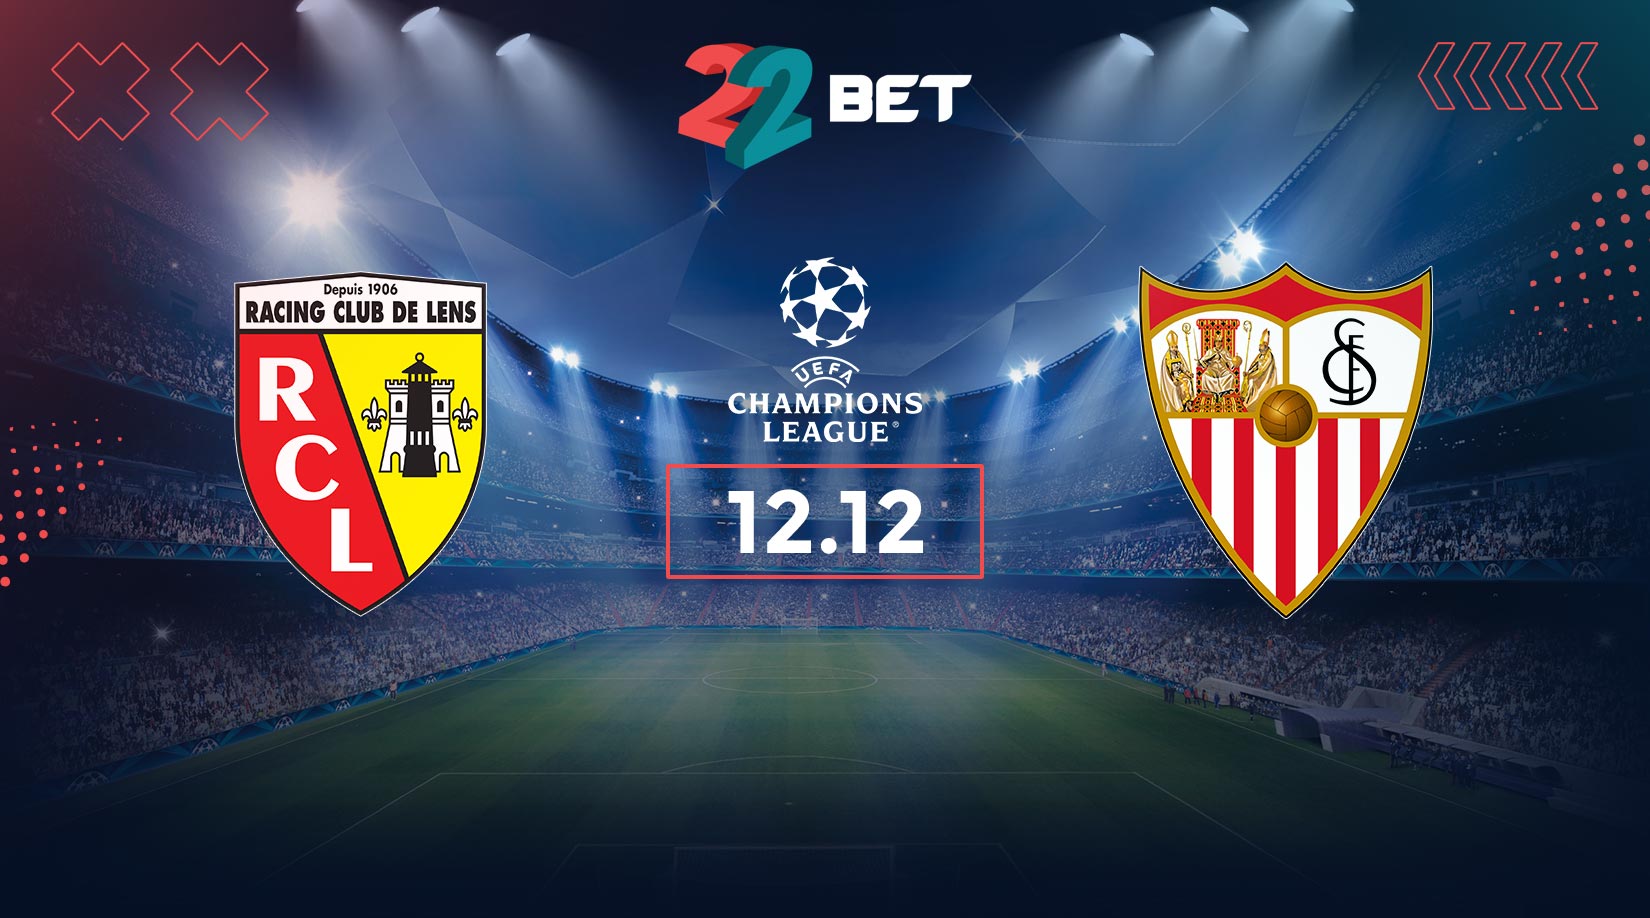 RC Lens vs Sevilla Prediction and Betting Tips